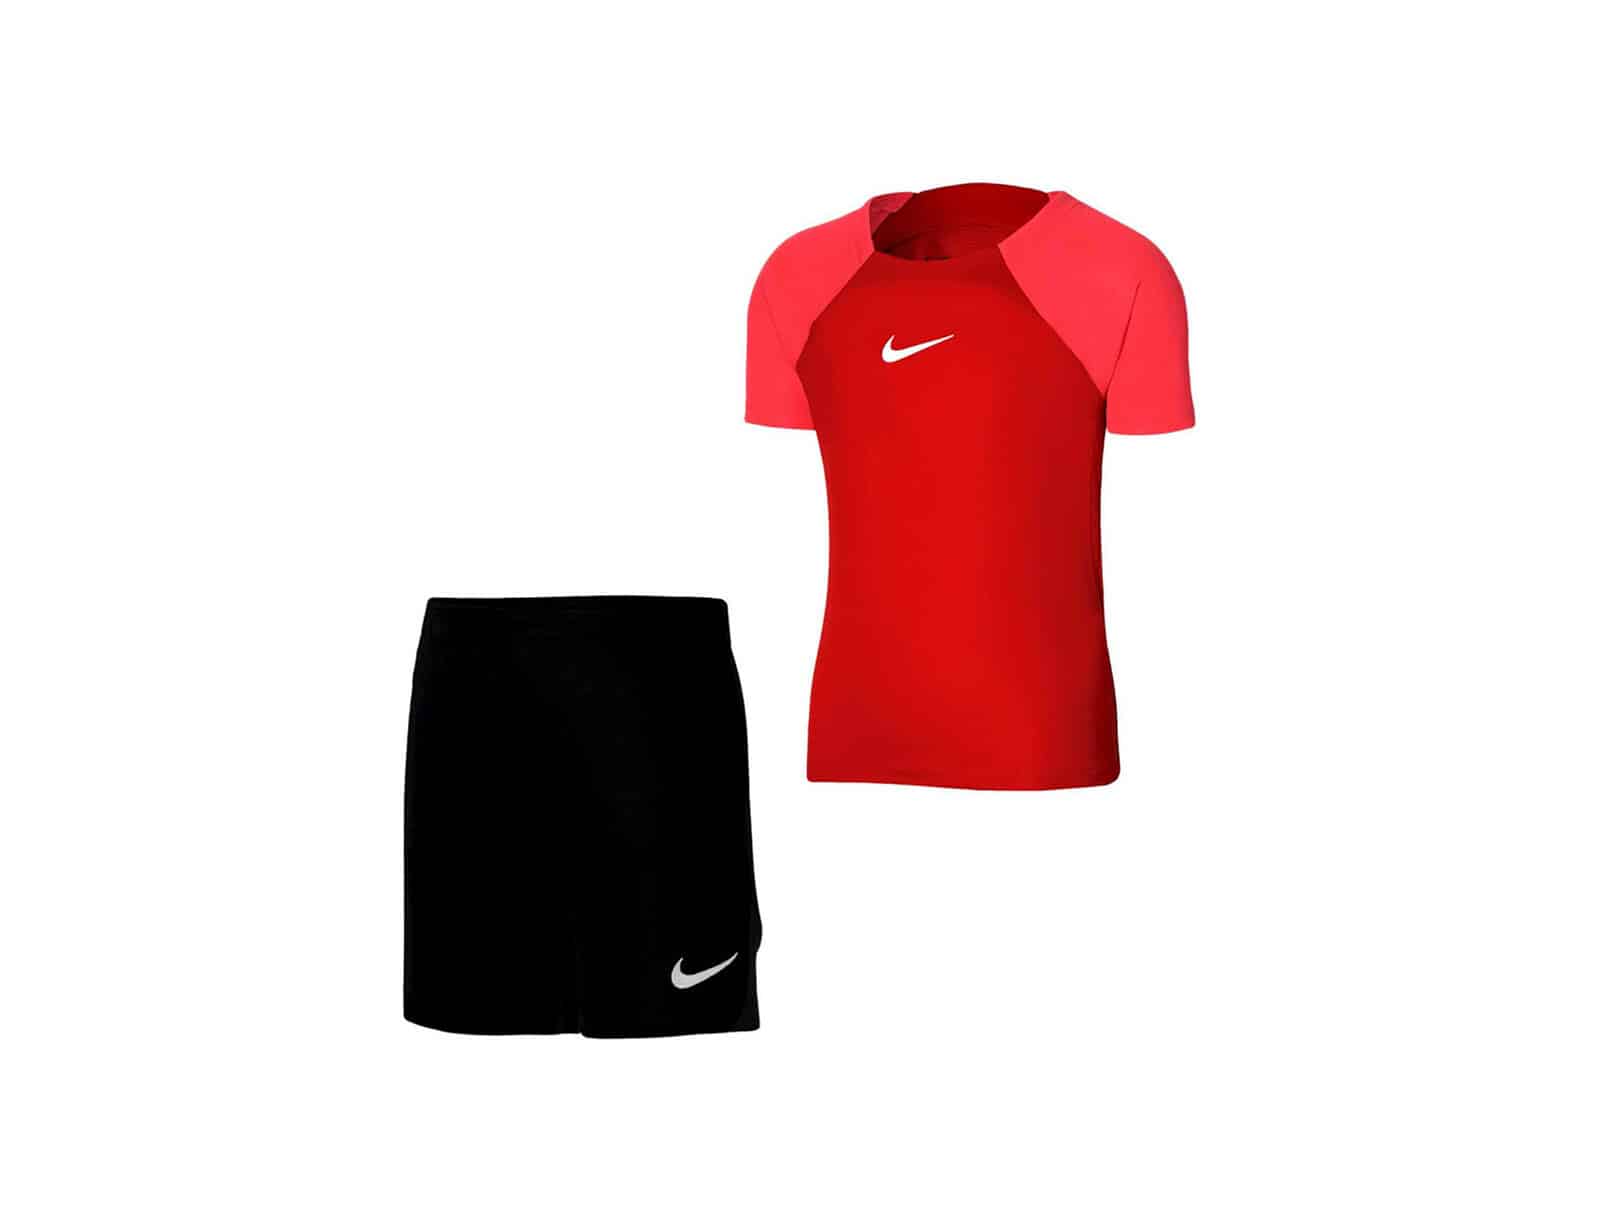 Nike - Academy Pro Training Kit Youth - Voetbalkit Kids